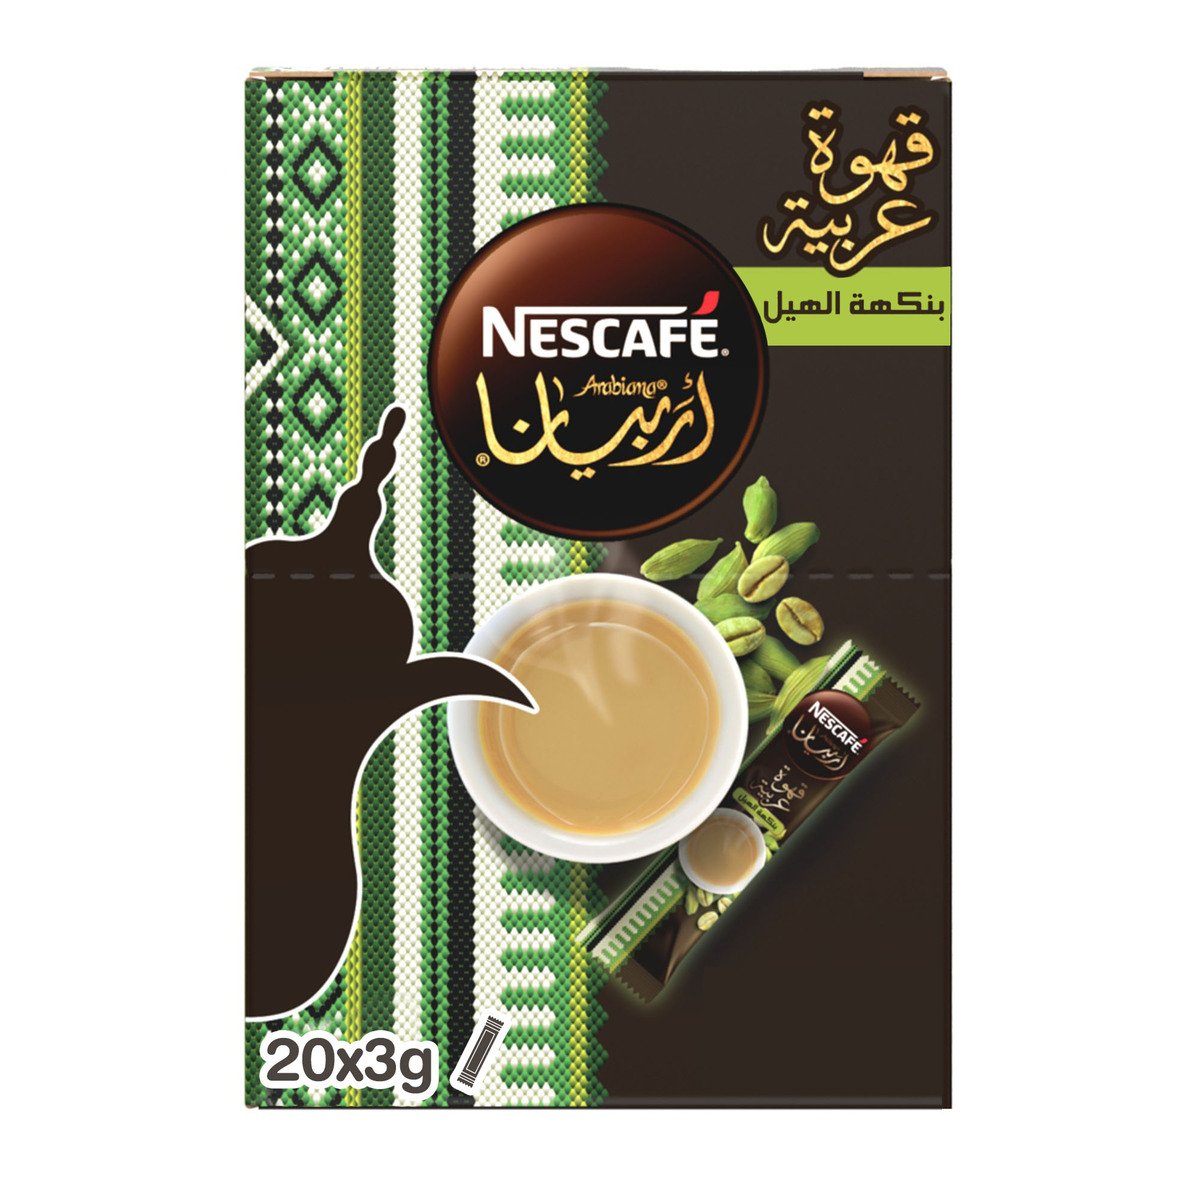 Nescafe Arabiana Coffee with Cardamom Flavour 20x3g